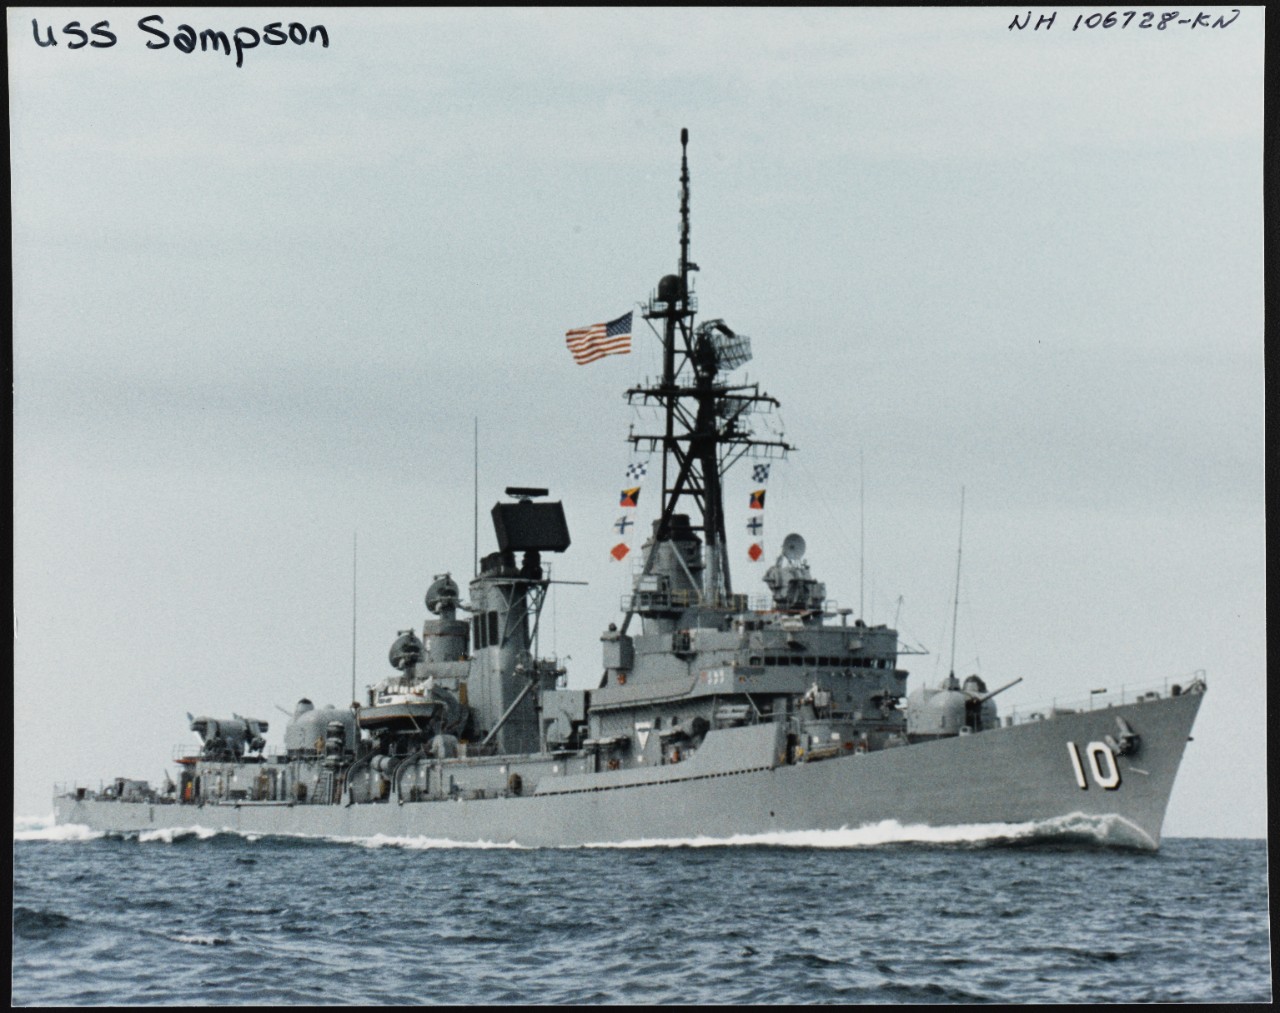 Photo # NH 106728-KN USS Sampson